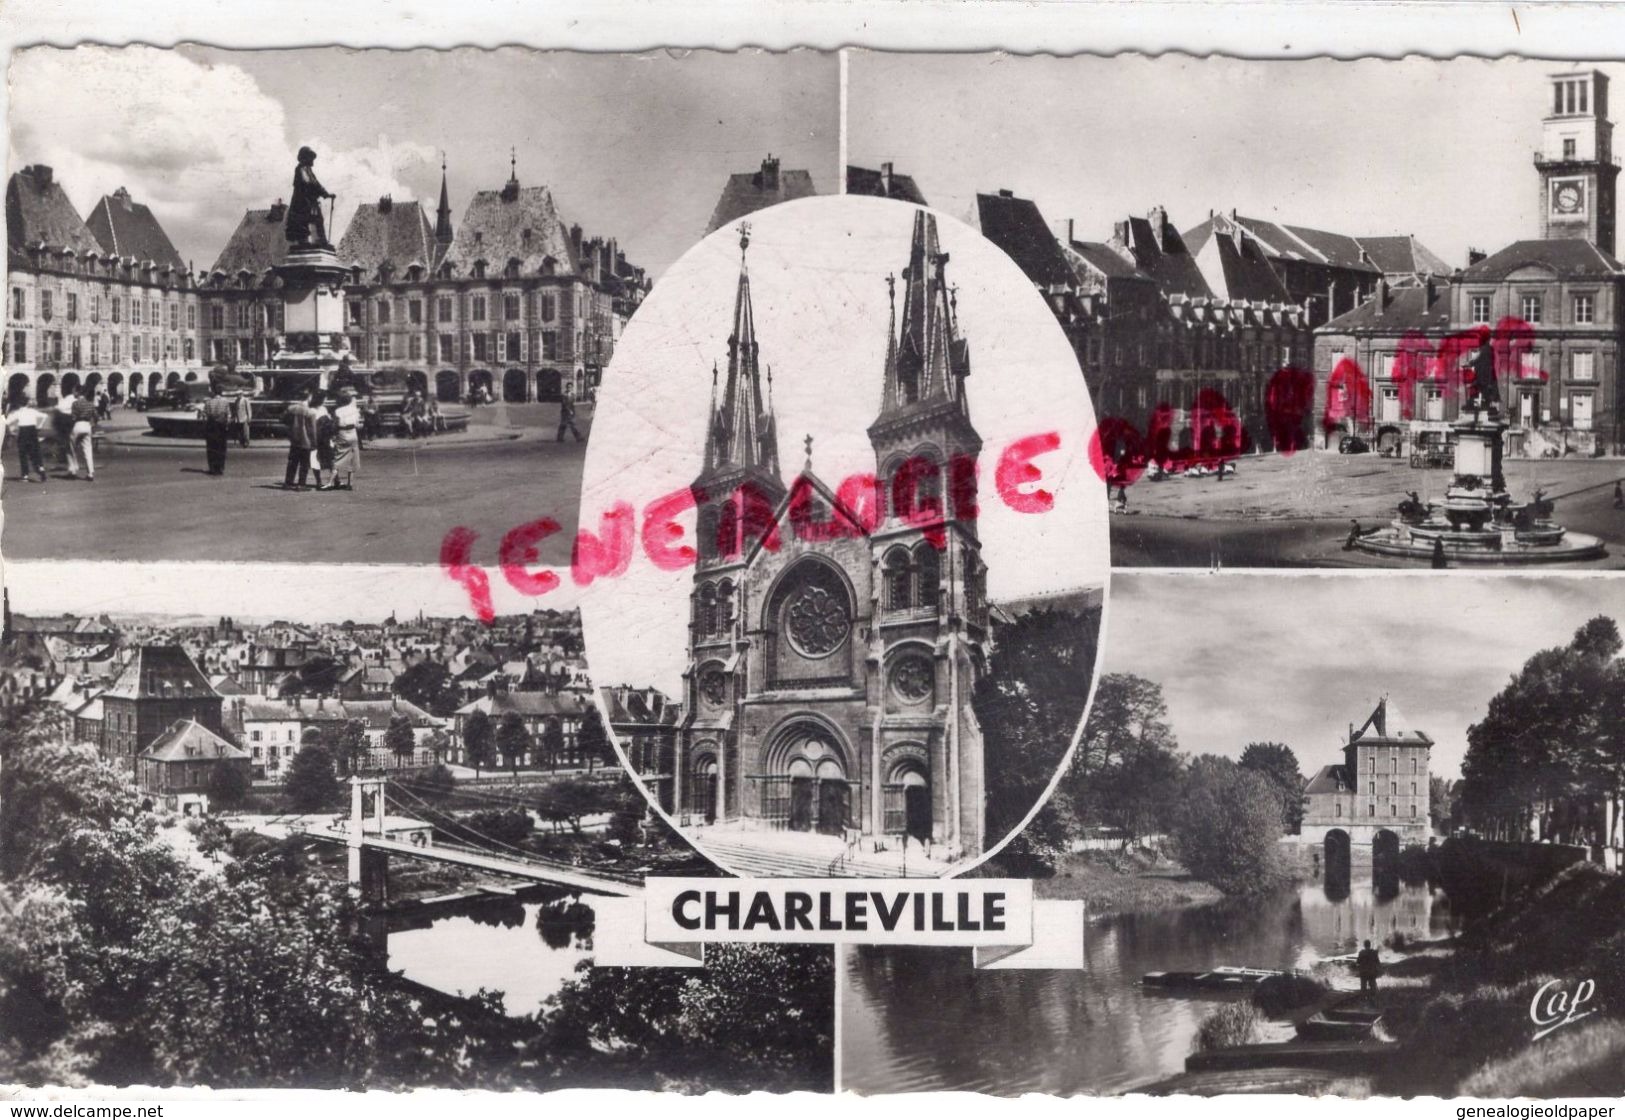 08 - CHARLEVILLE - PLACE DUCALE- STATUE CHARLES DE GONZAGUE-VUE GENERALE-EGLISE- LA MEUSE ET VIEUX MOULIN - Charleville